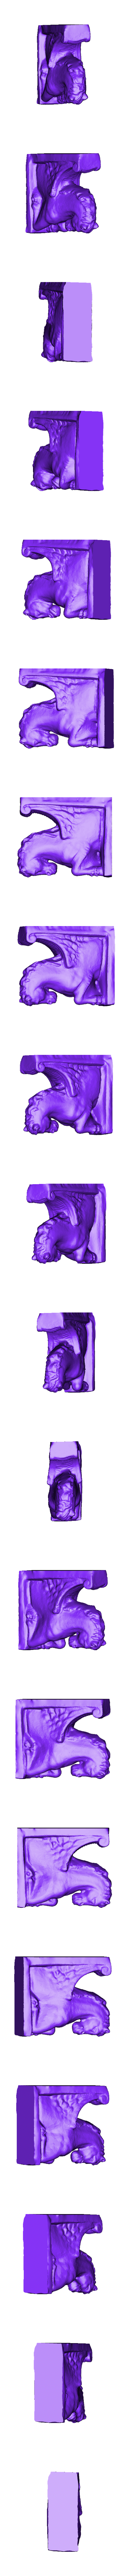 HorseStatue.stl Télécharger le fichier STL gratuit Scan 3D de la statue de cheval (Pégase) • Objet pour impression 3D, 3DWP